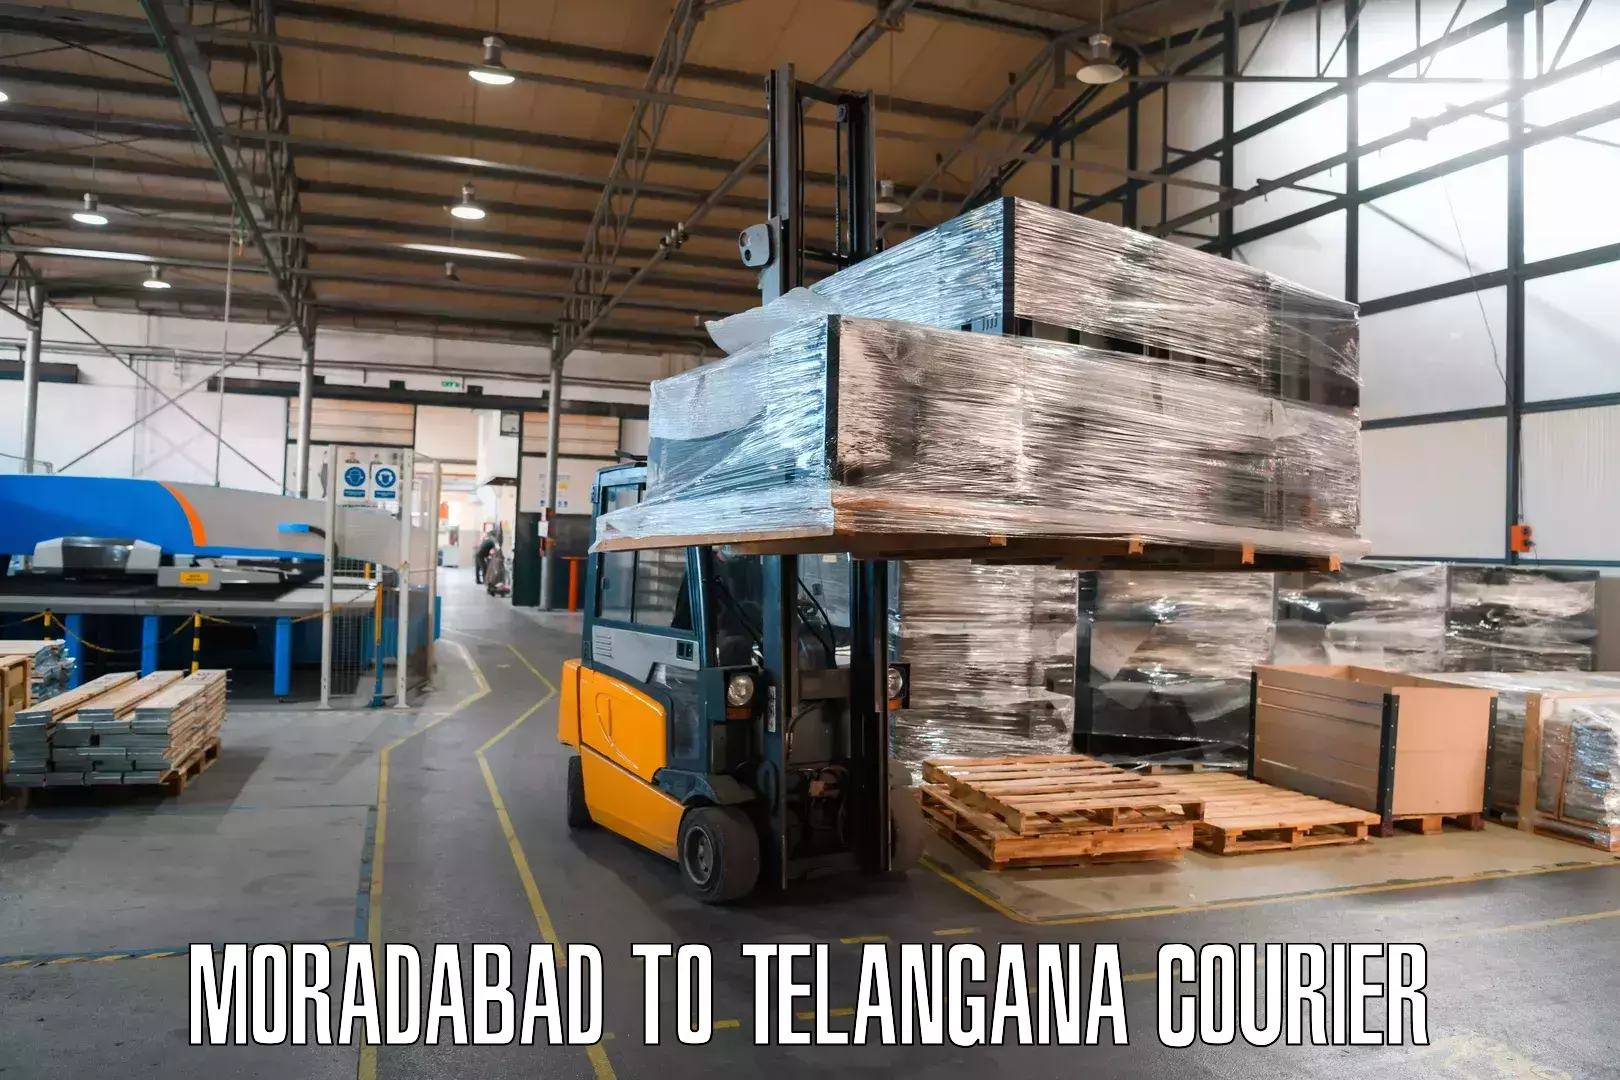 Tech-enabled shipping Moradabad to Vikarabad